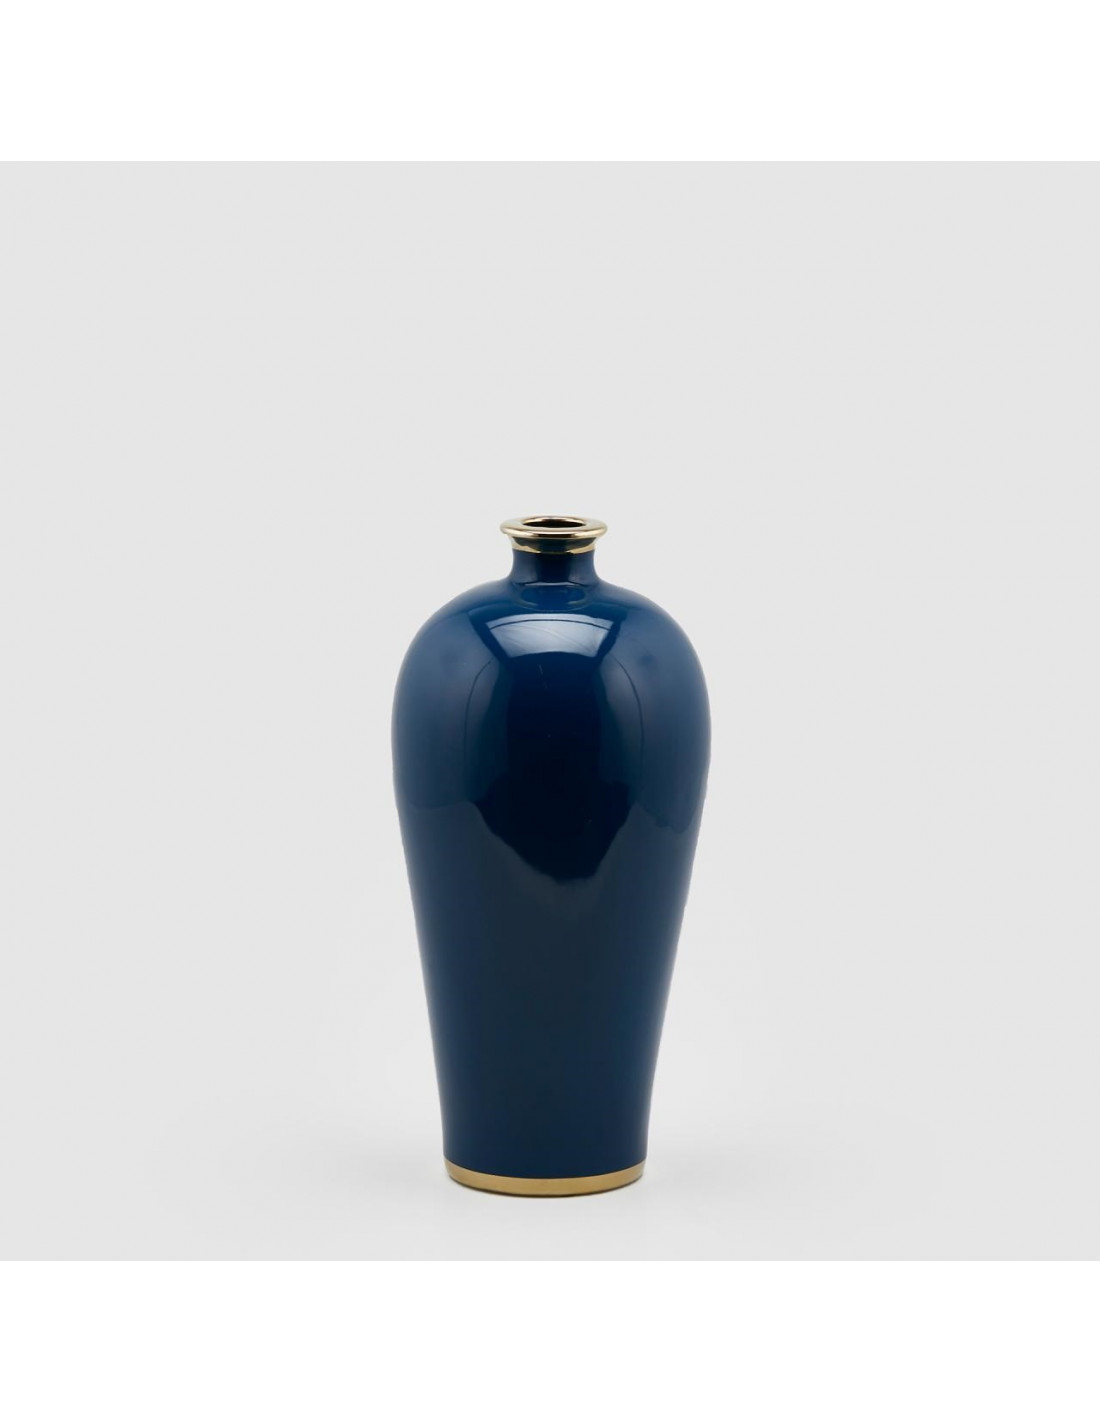 Vaso Ching collostretto blu con rifiniture oro - H.40x19 - EDG